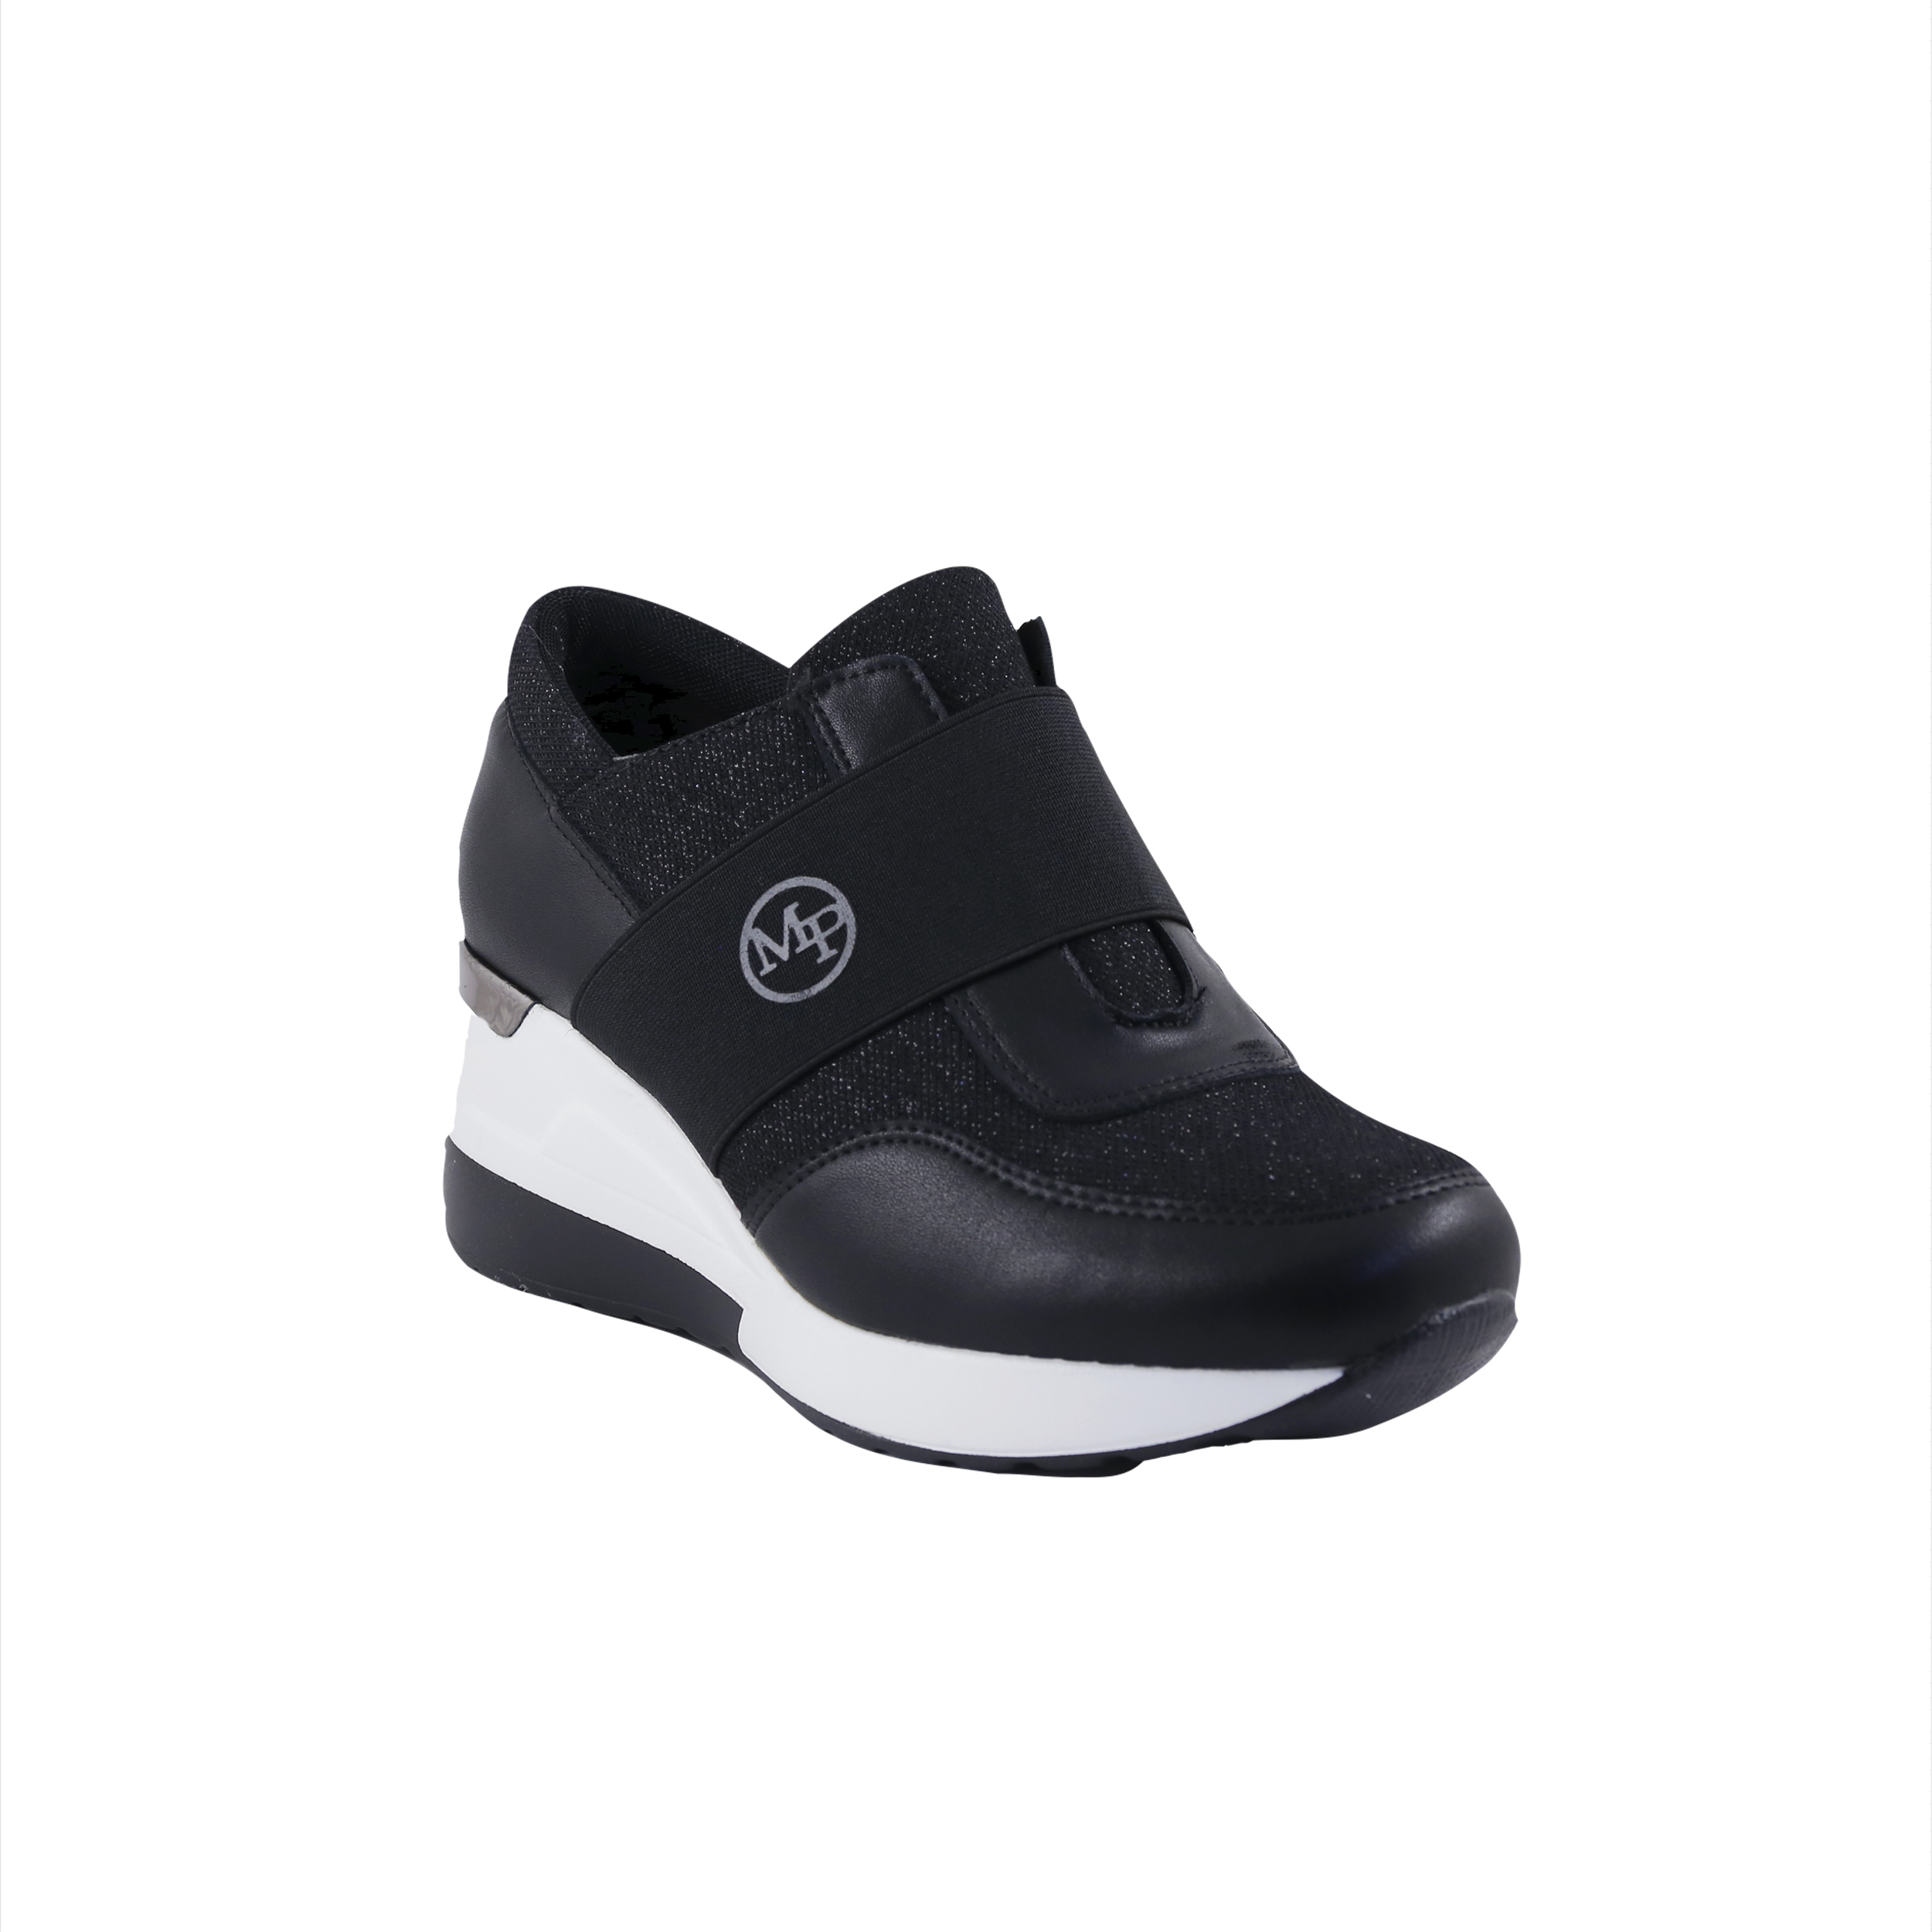 Γυναίκα Παπούτσια Casual-Sneakers Μαύρα sneakers με λάστιχο